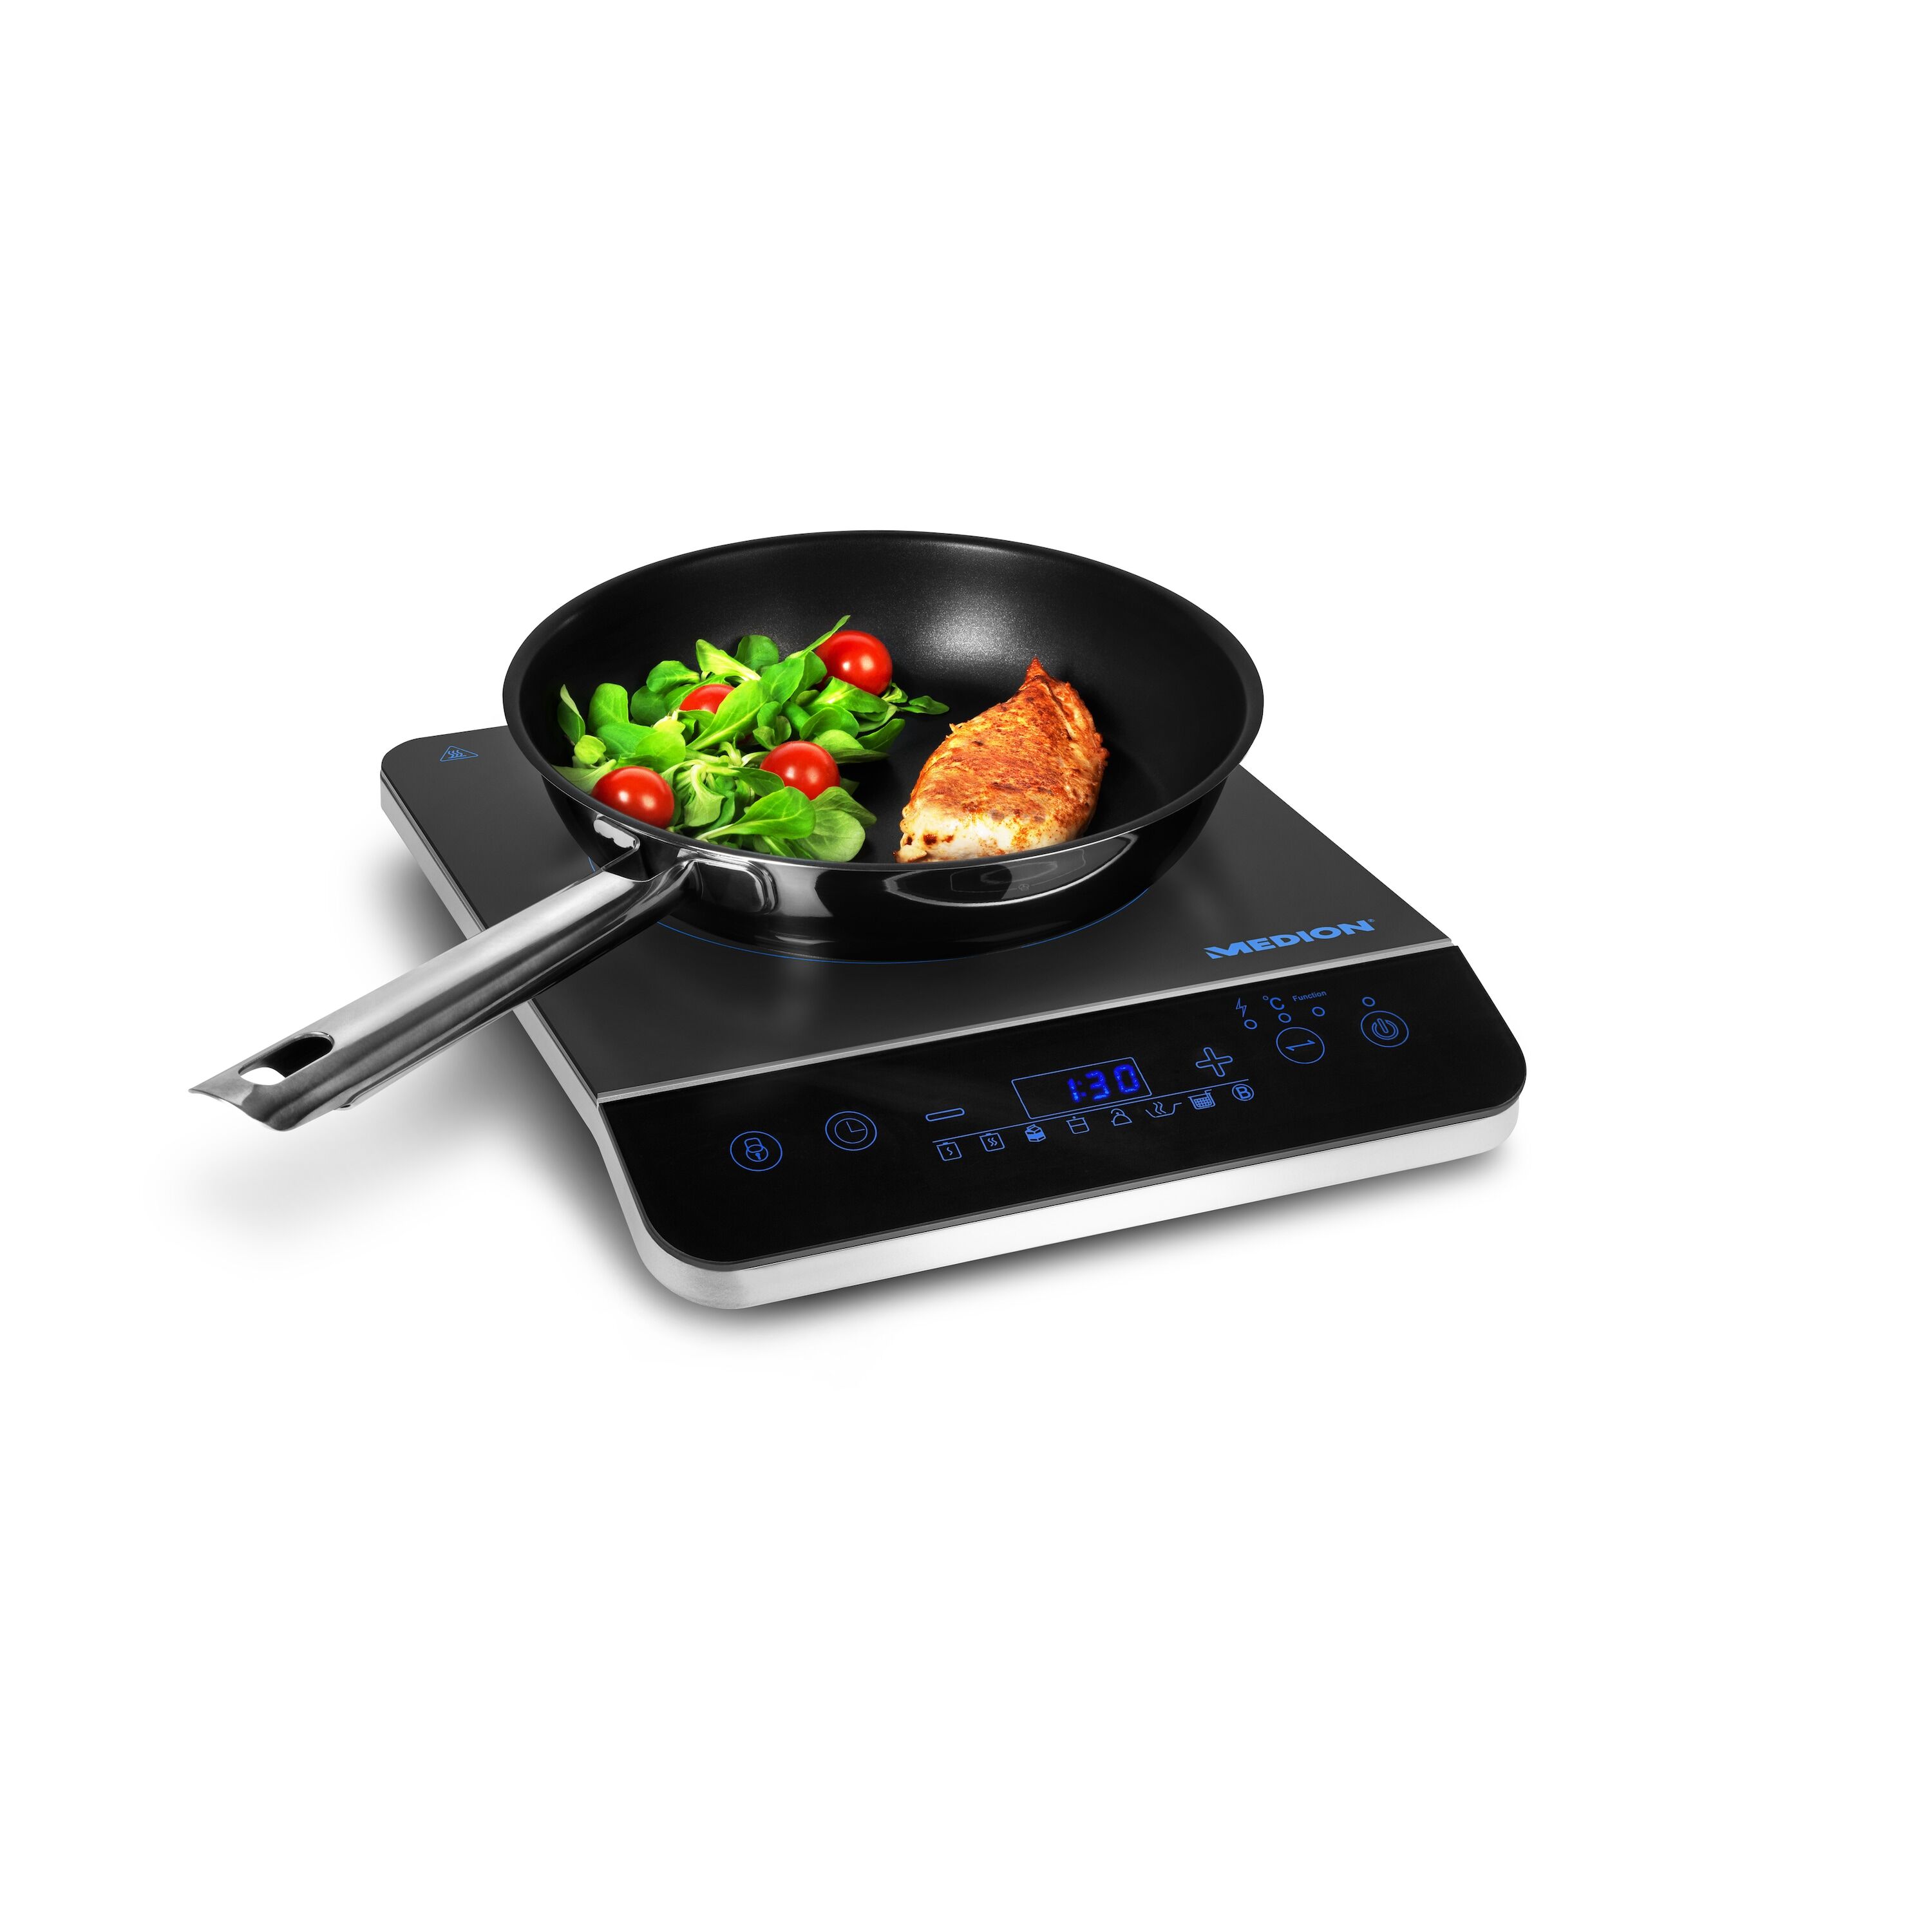 MEDION MEDION® Plaque de cuisson à induction MD 17595   Panneau de commande tactile   Jusqu'à 240°C   10 niveaux de puissance   Programmes automatique